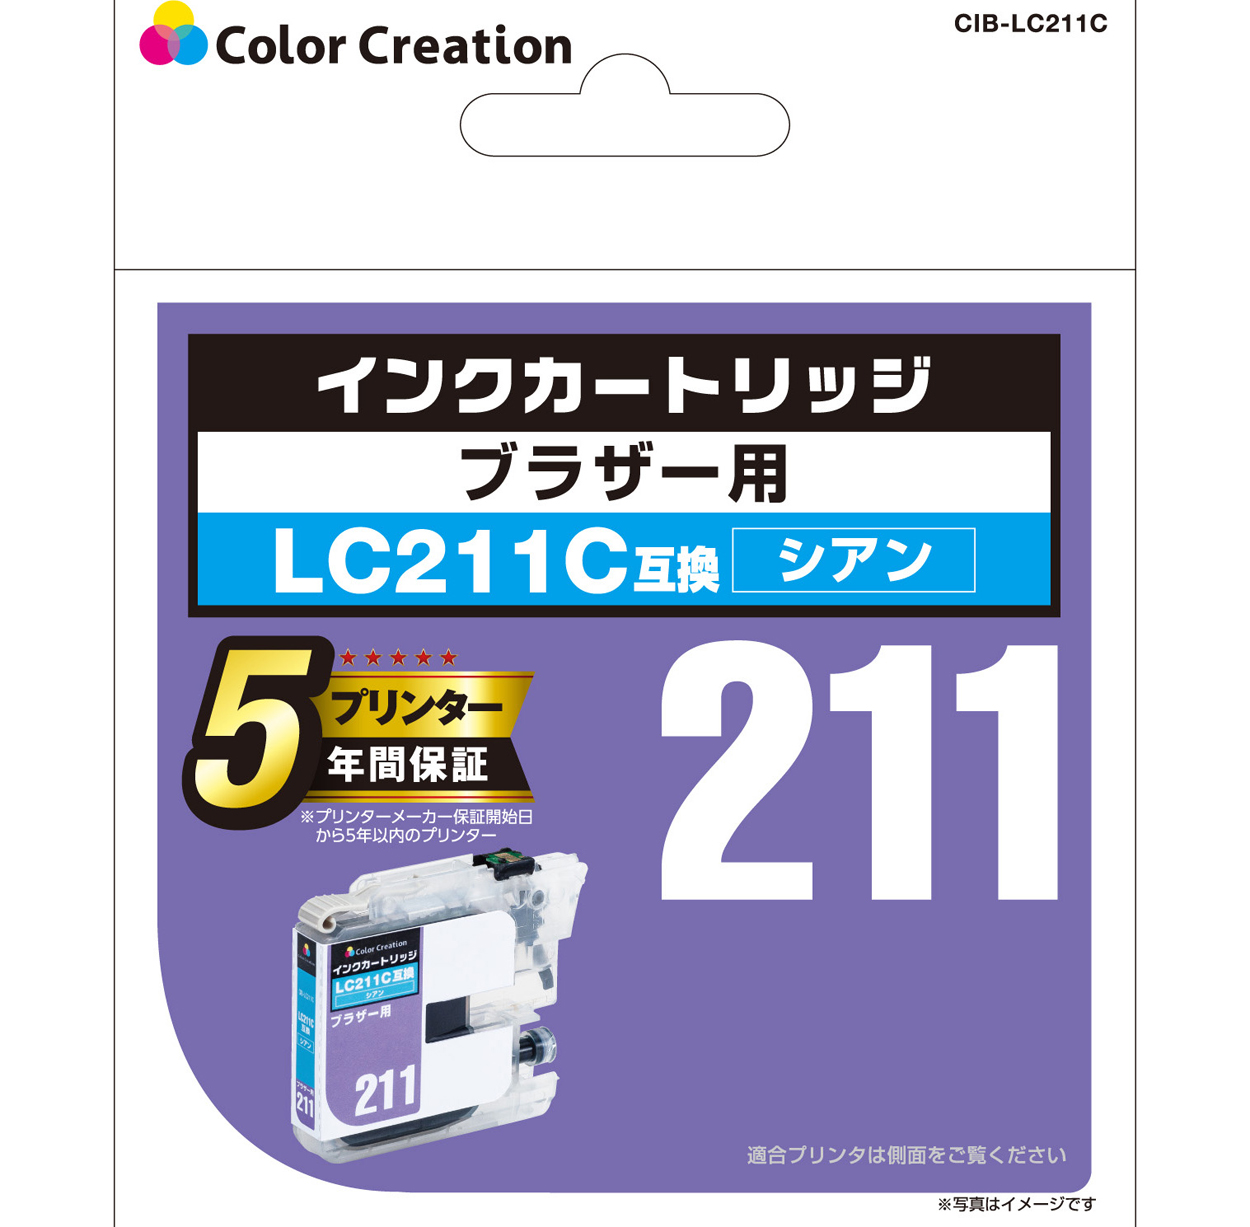 ブラザー LC211C互換 インクカートリッジ CIB-LC211C | ColorCreation カラークリエーション